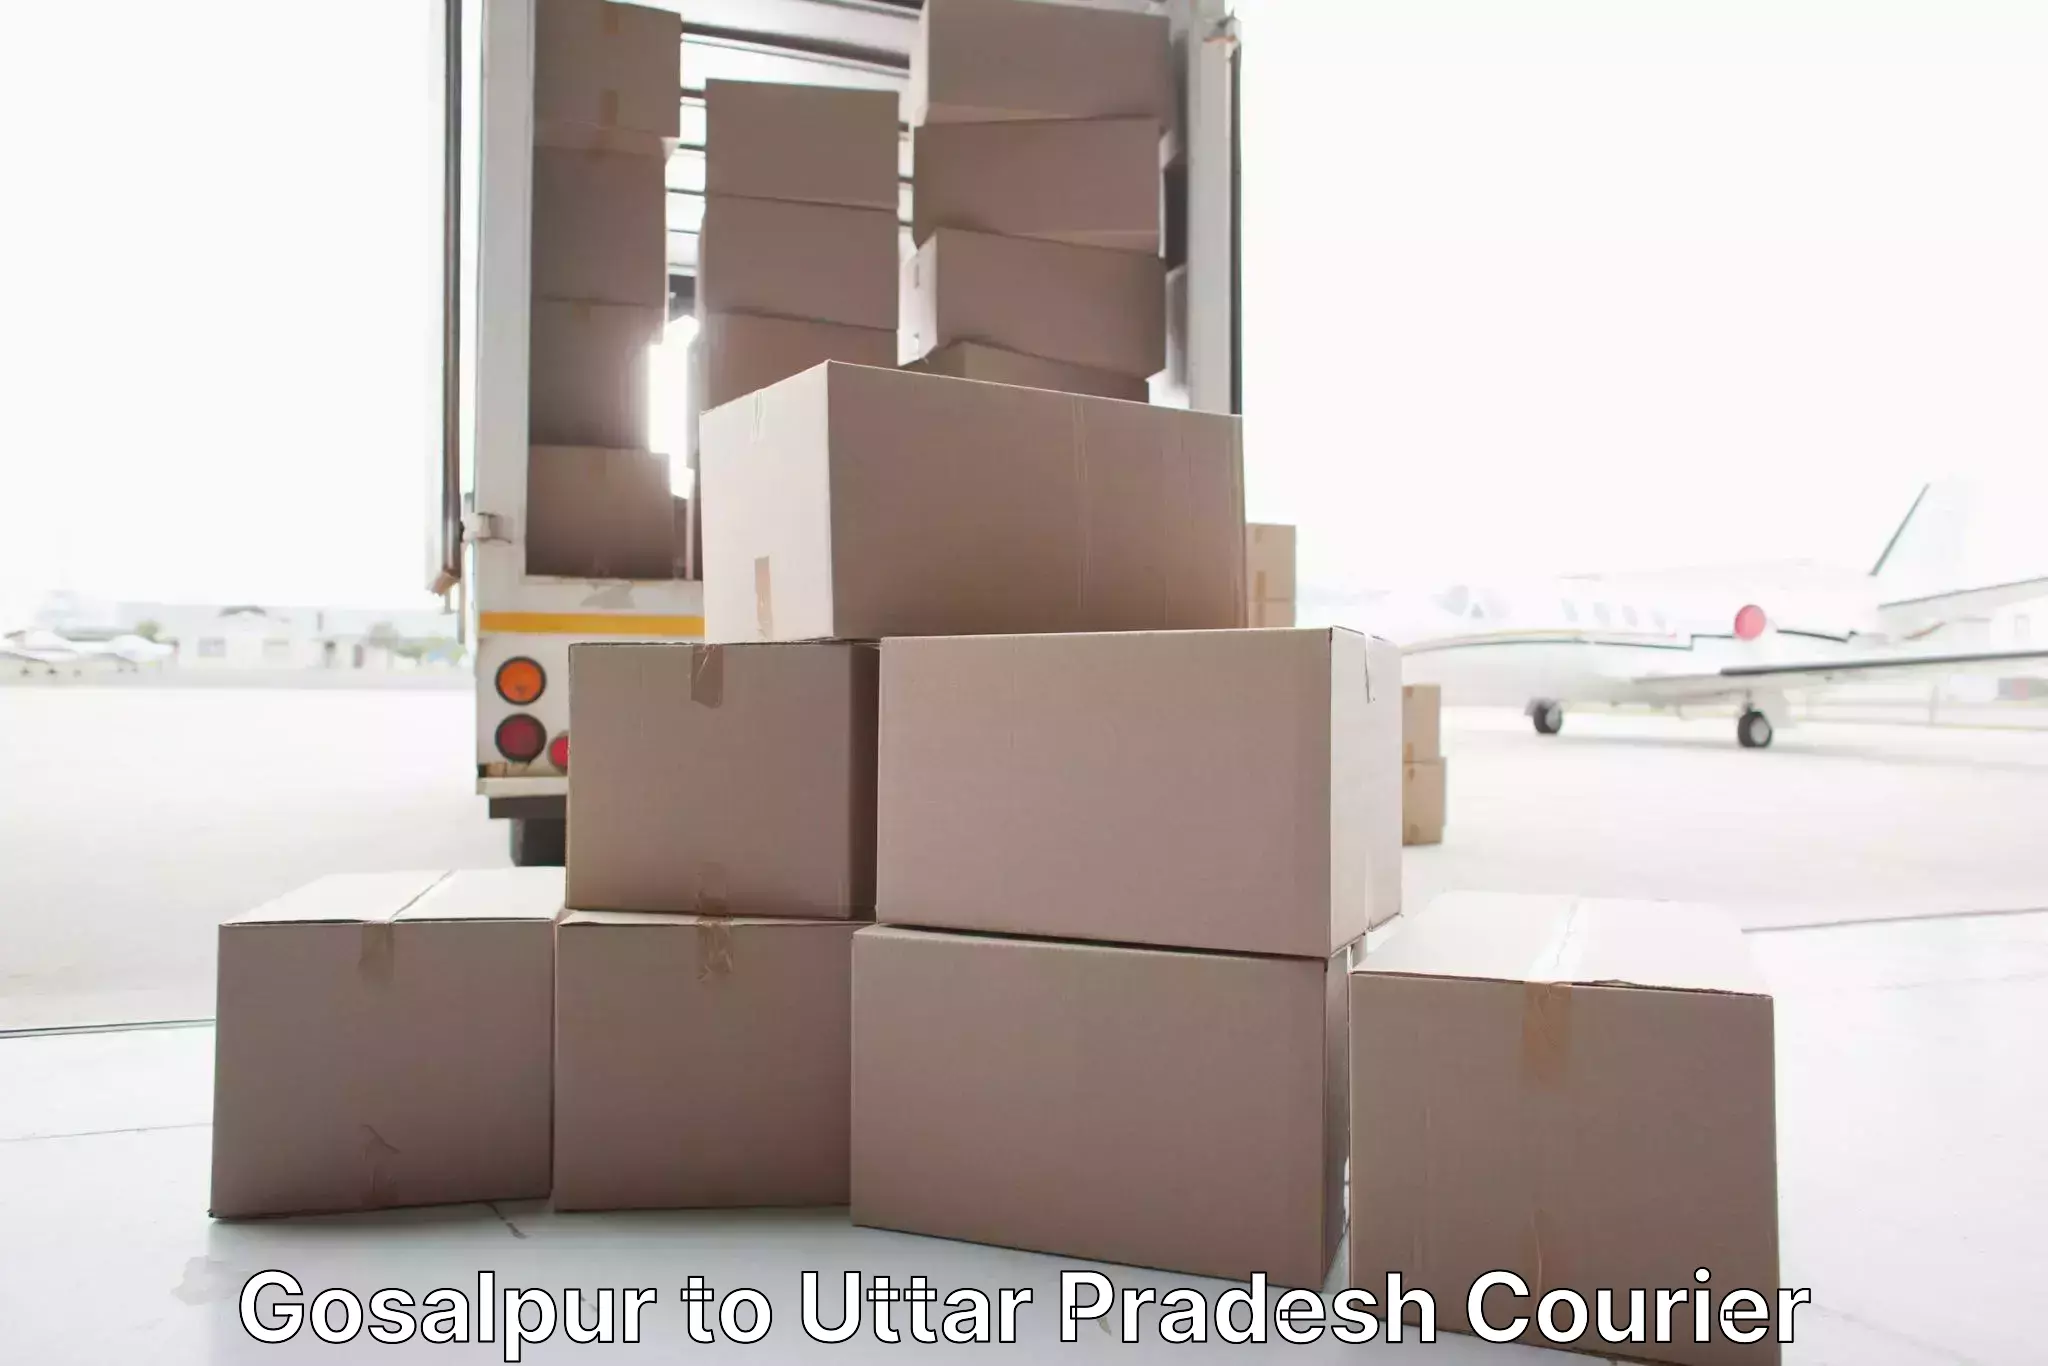 Furniture logistics Gosalpur to Kirauli